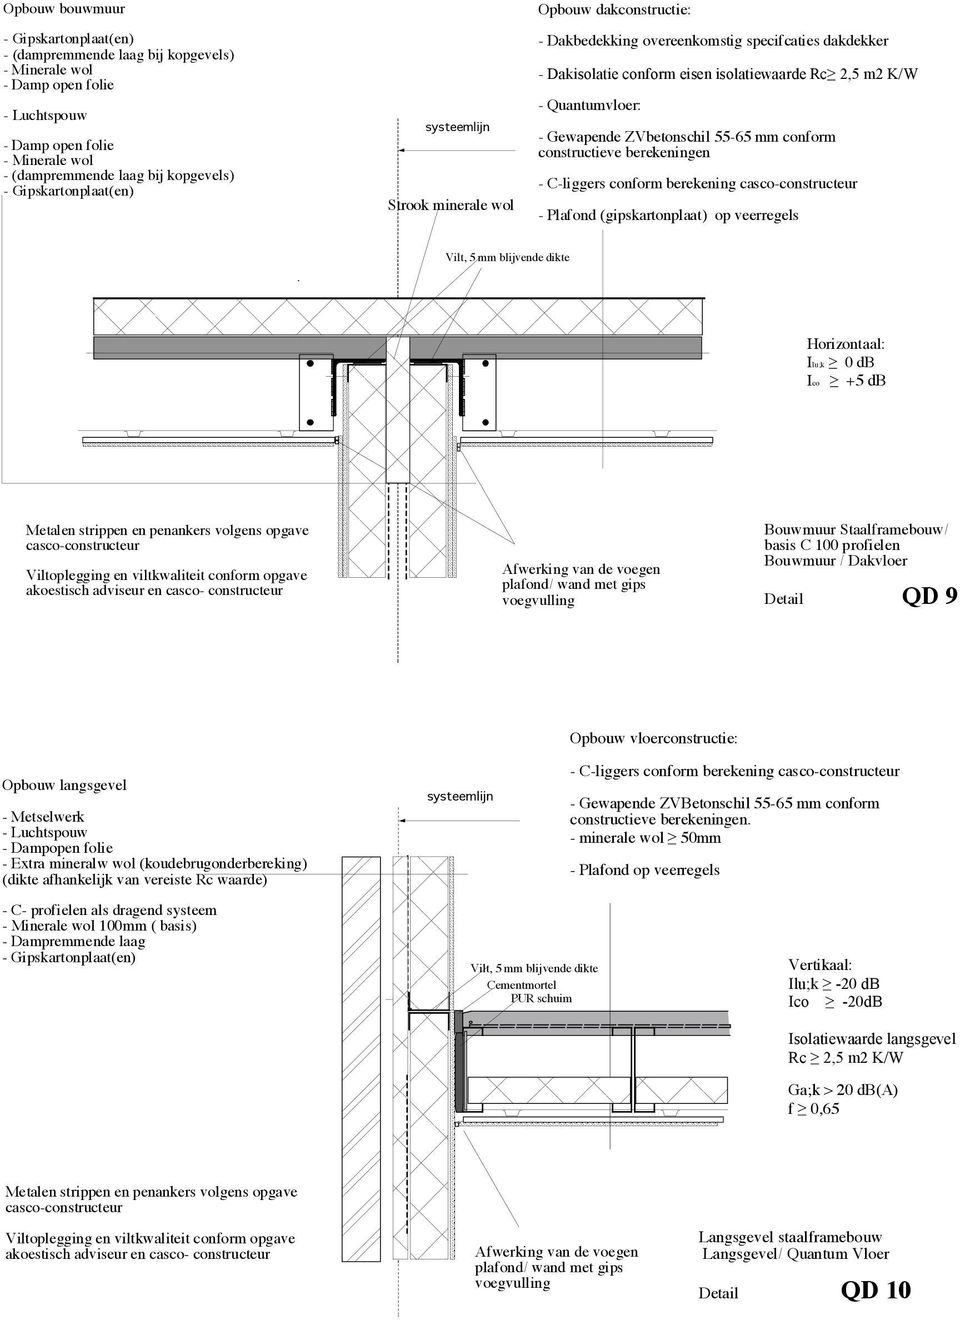 +5 db Afwerking van de voegen plafond/ wand met gips voegvulling Bouwmuur Staalframebouw/ basis C 100 profielen Bouwmuur / Dakvloer QD 9 Opbouw vloerconstructie: Opbouw langsgevel - Metselwerk -